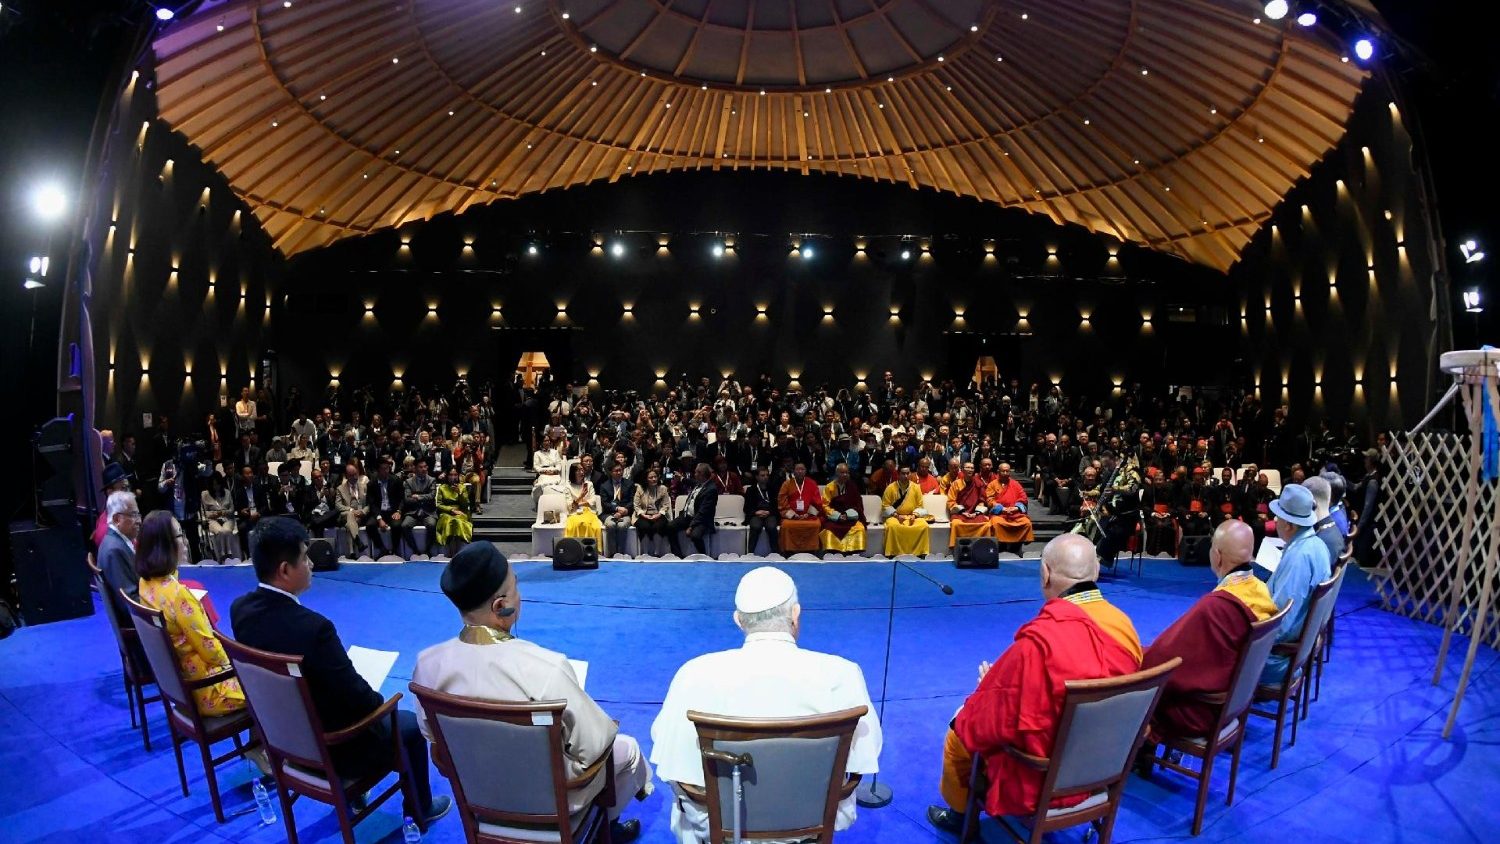 Papina poruka u Mongolji: Religije su u službi dobra, neka njeguju dijalog, slogu i nadu